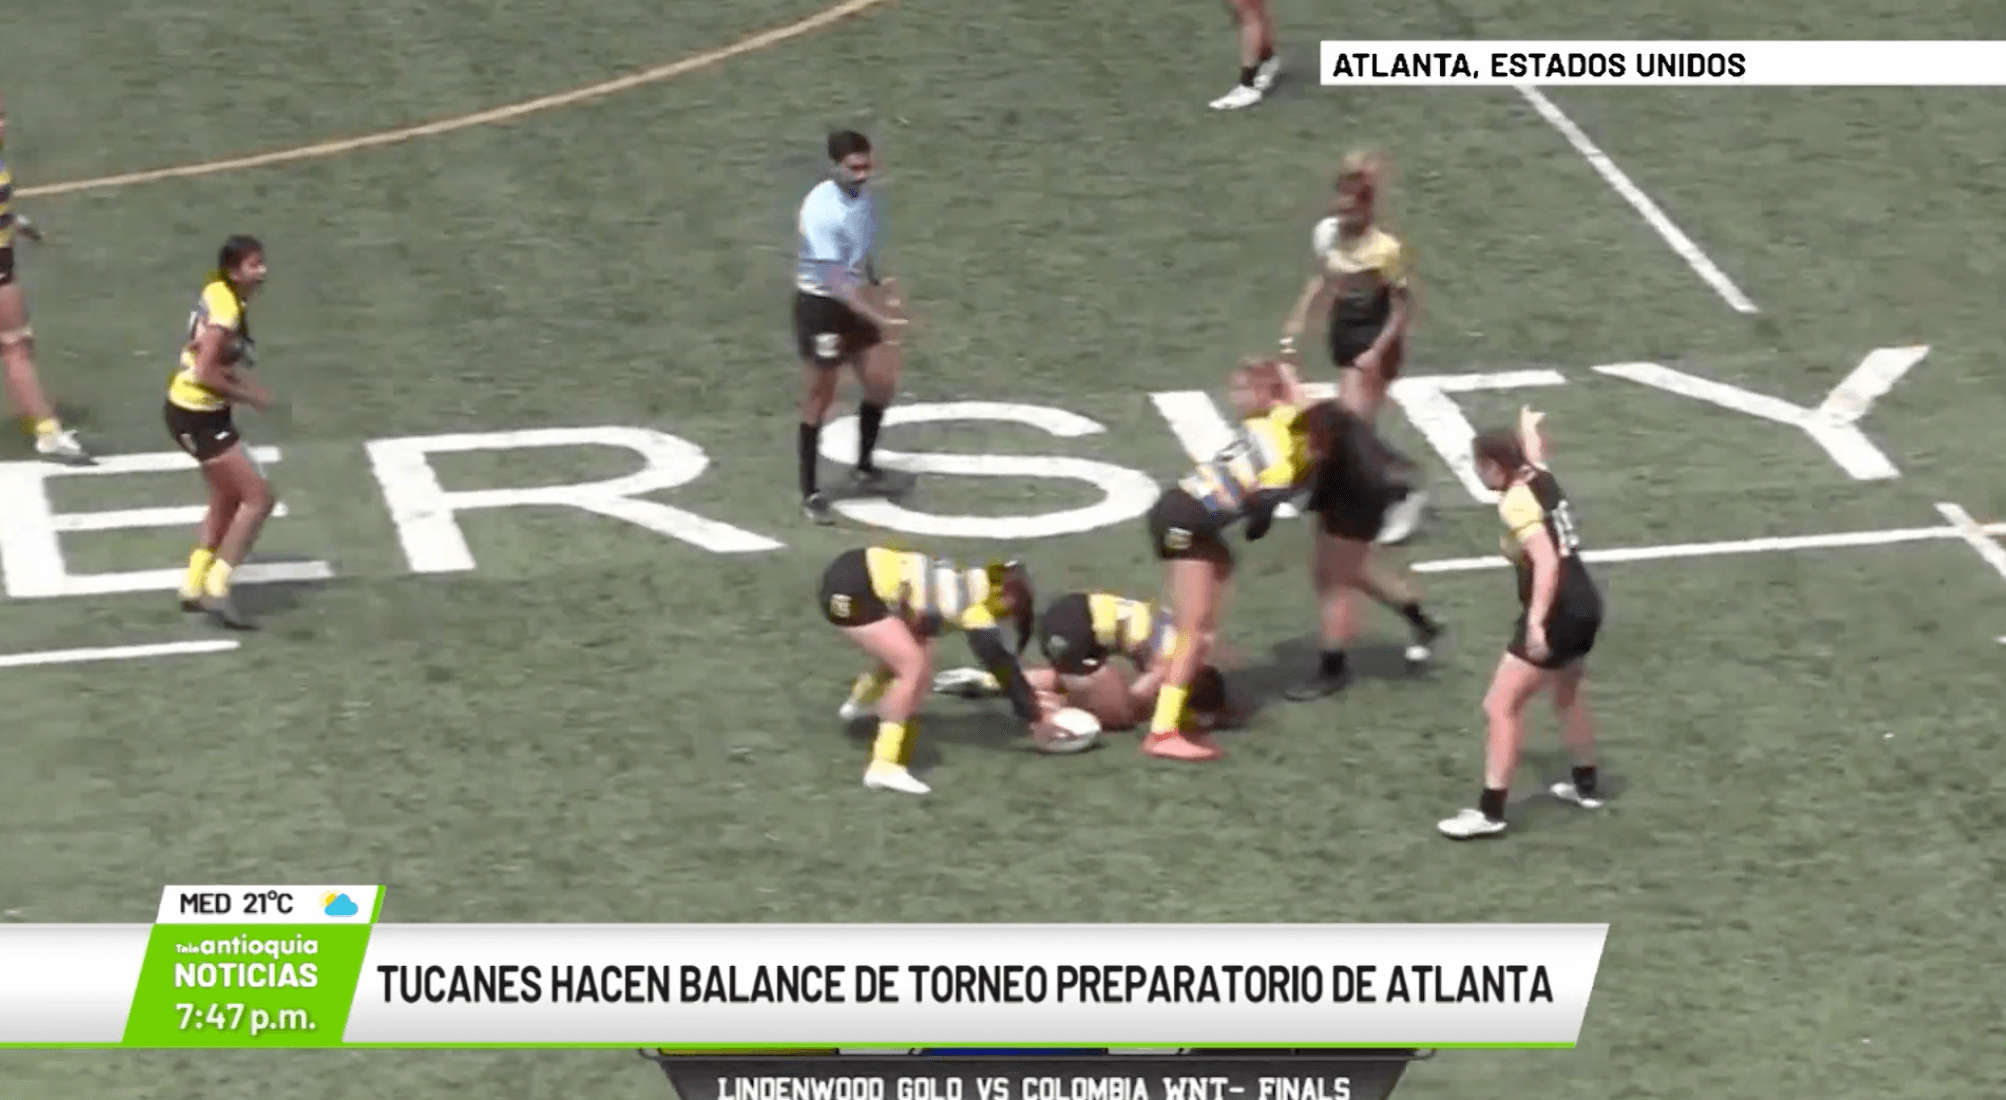 Tucanes hacen balance de torneo preparatorio de Atlanta